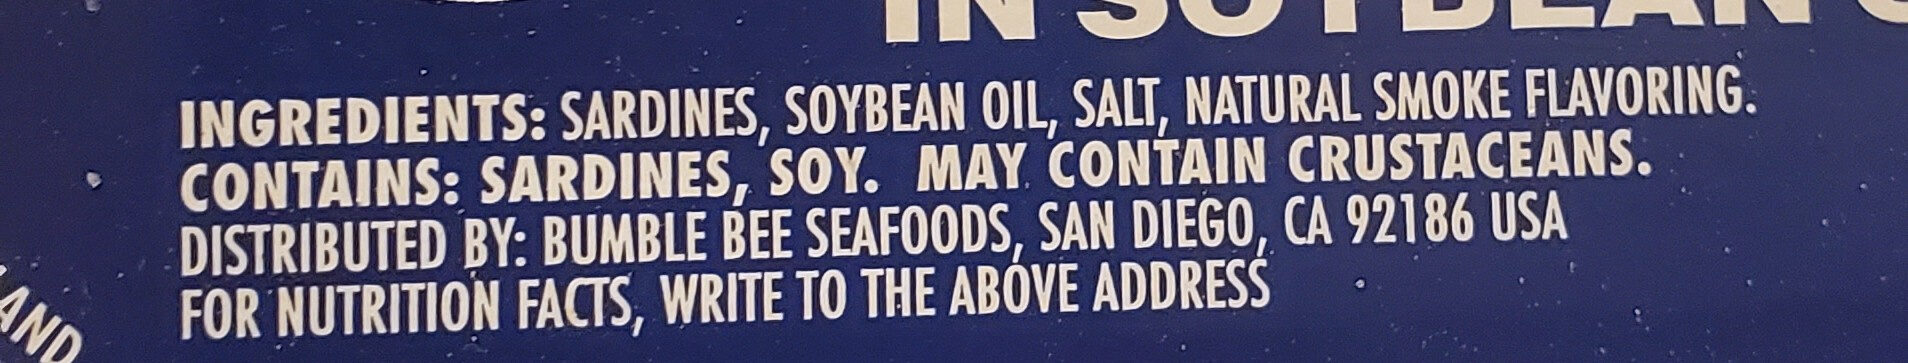 Sardines in soybean oil - Ingredients